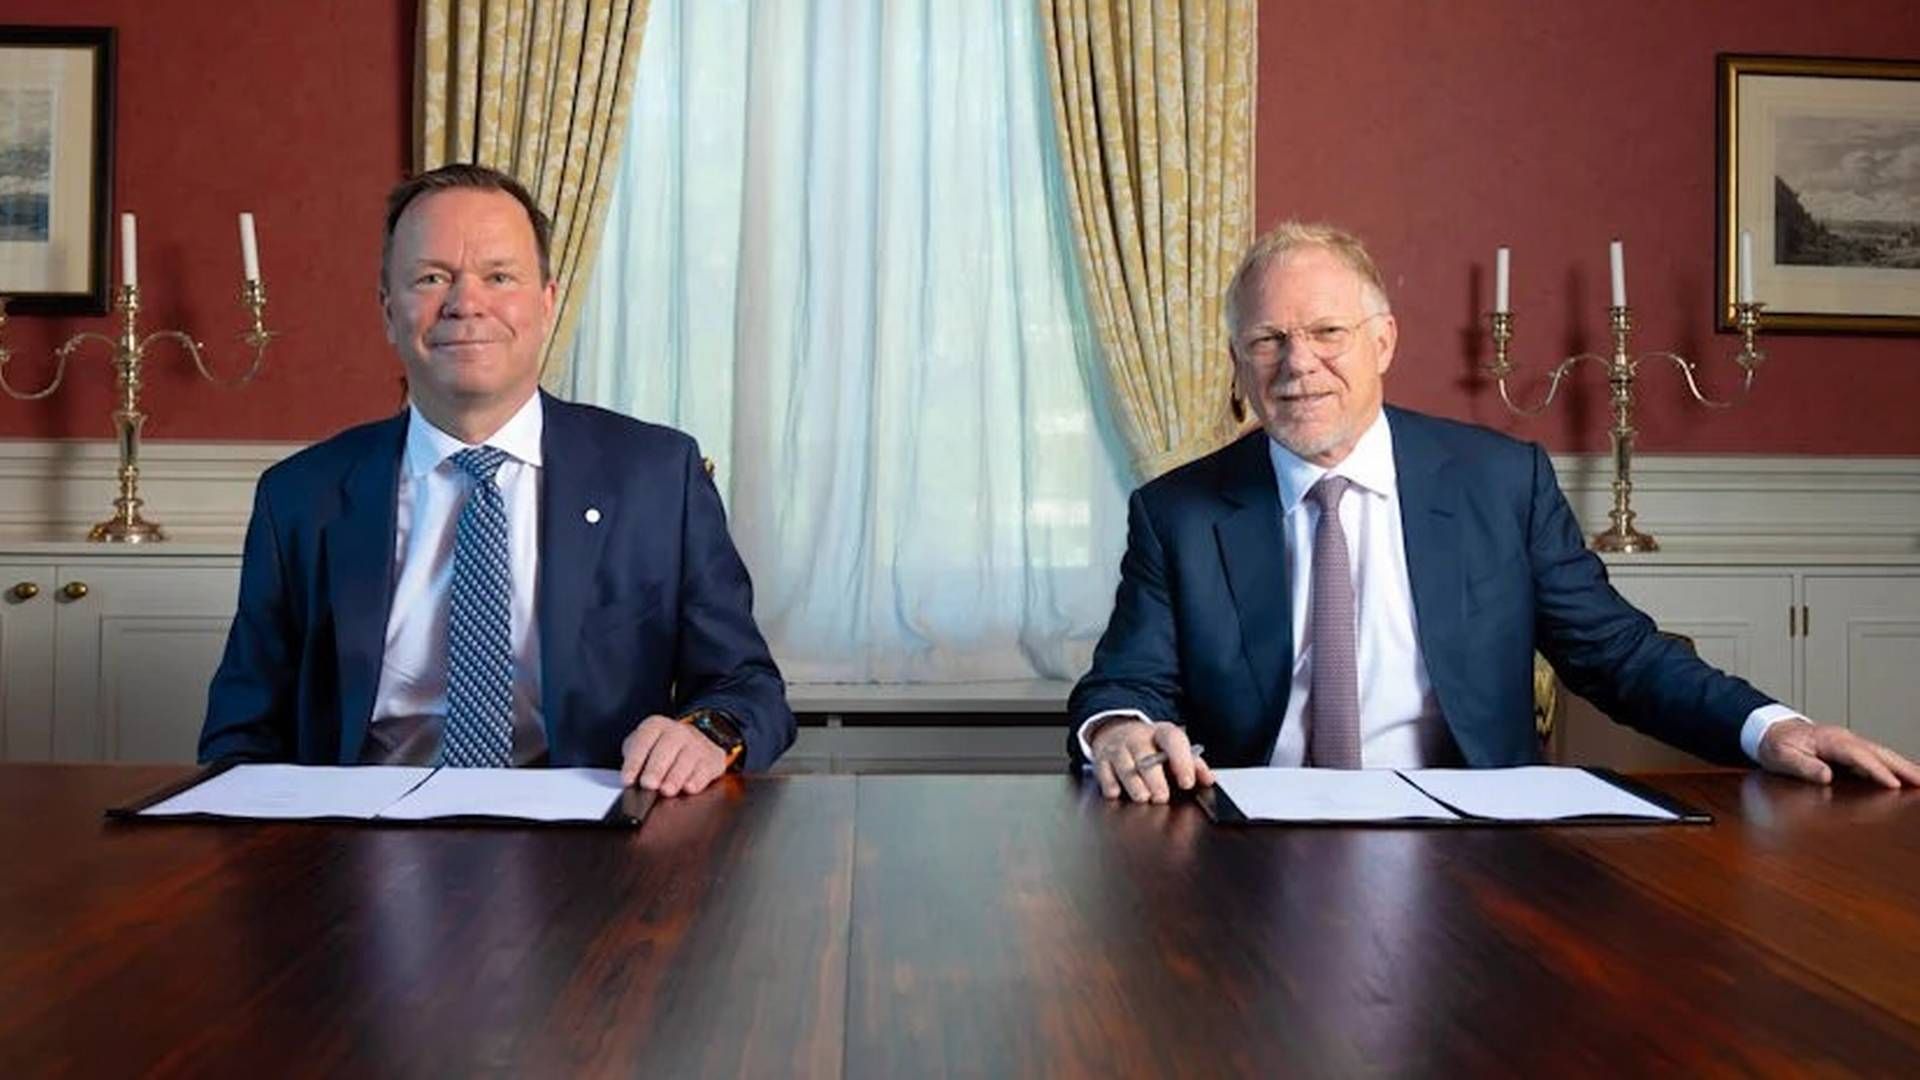 Hydro-sjef Eivind Kallevik og Mark Dooley i Macquarie undertegnet avtalen om å bli partnere i joint venture selskapet Hydro Rein. | Foto: Herman Kristoffer Skjølsvik, Hydro